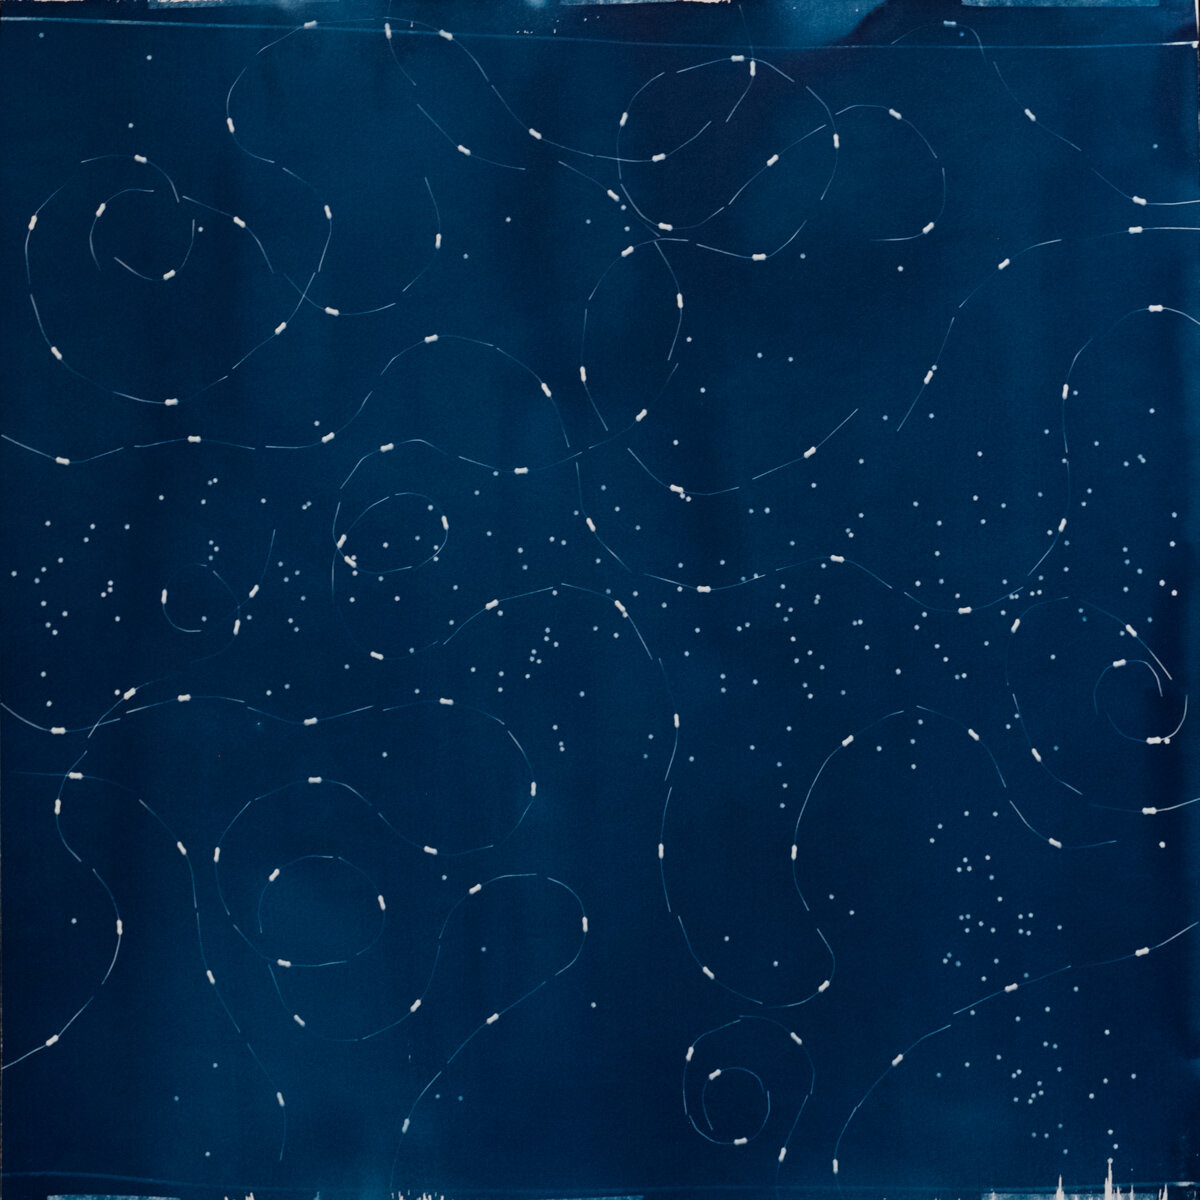 Twire Series, 22x22 cyanotype